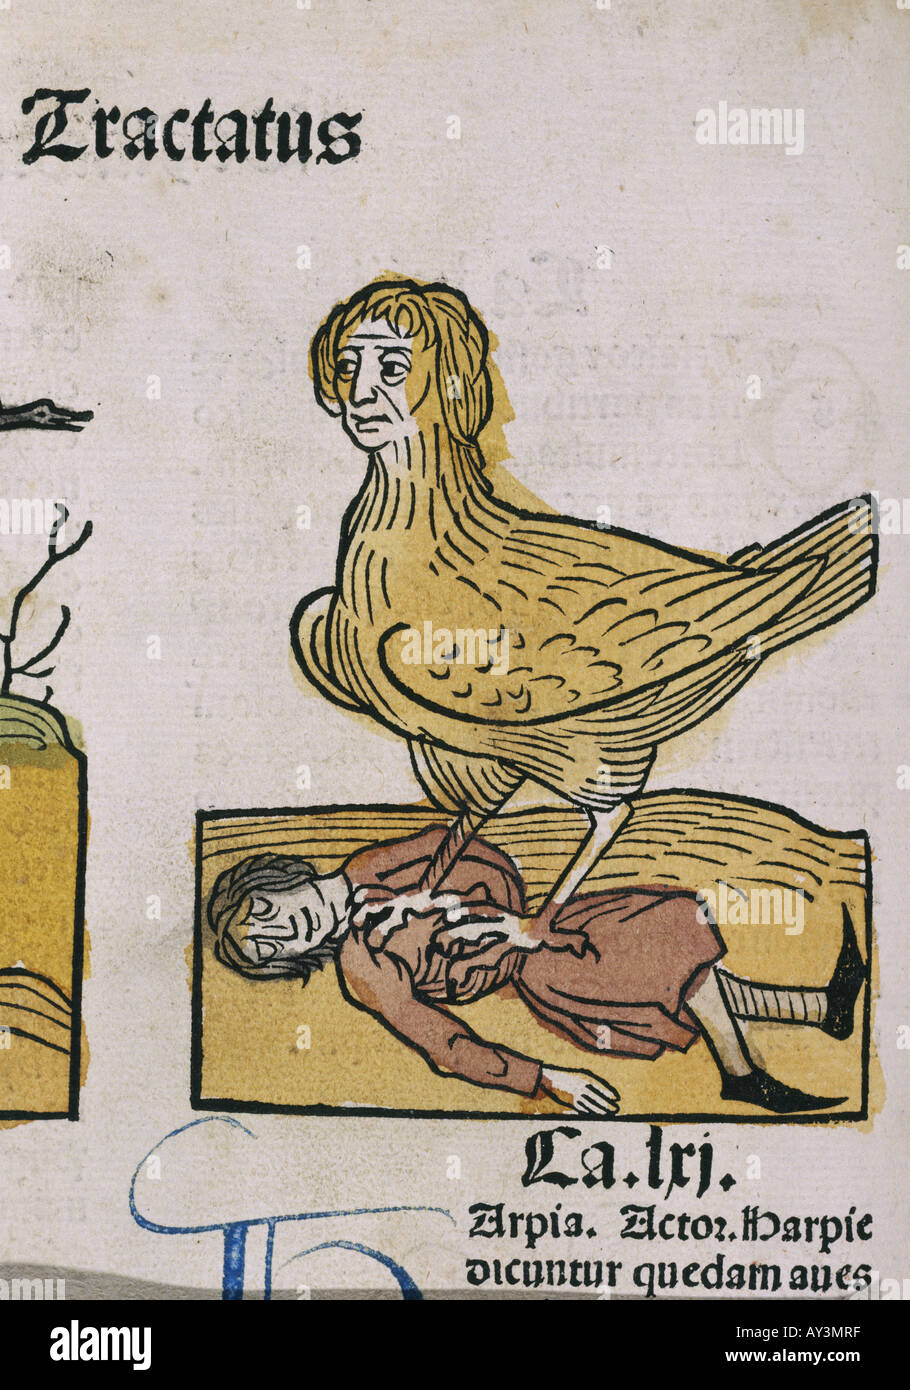 Una pesadilla medieval Foto de stock